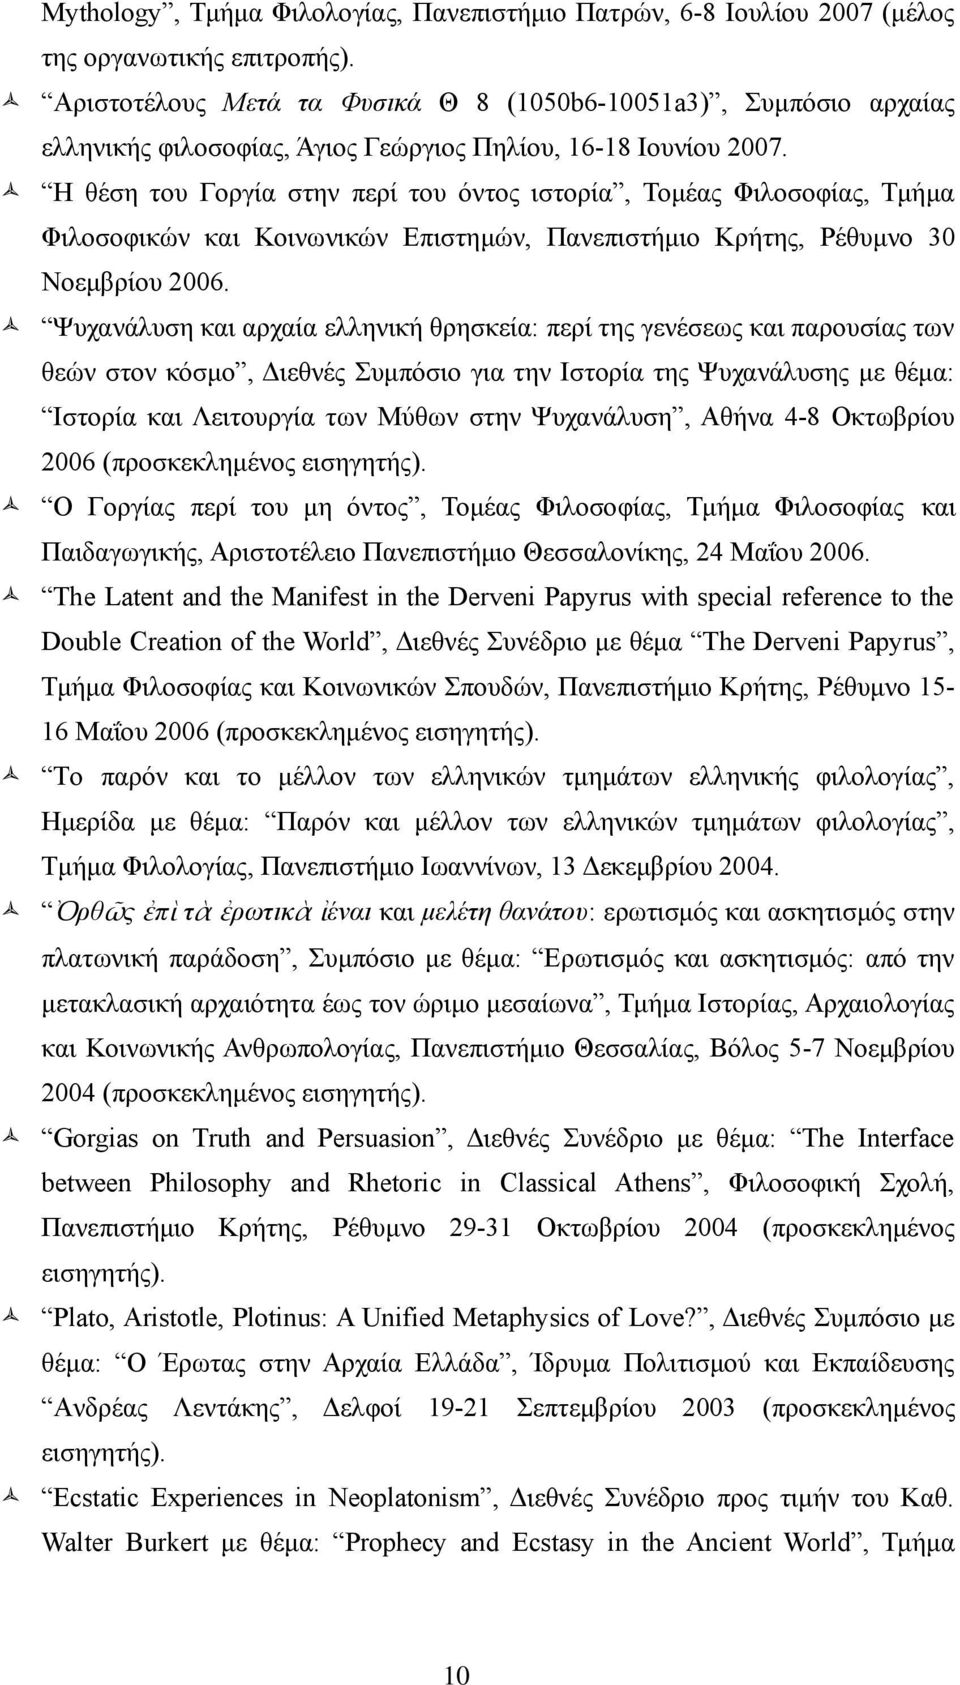 Η θέση του Γοργία στην περί του όντος ιστορία, Τομέας Φιλοσοφίας, Τμήμα Φιλοσοφικών και Κοινωνικών Επιστημών, Πανεπιστήμιο Κρήτης, Ρέθυμνο 30 Νοεμβρίου 2006.